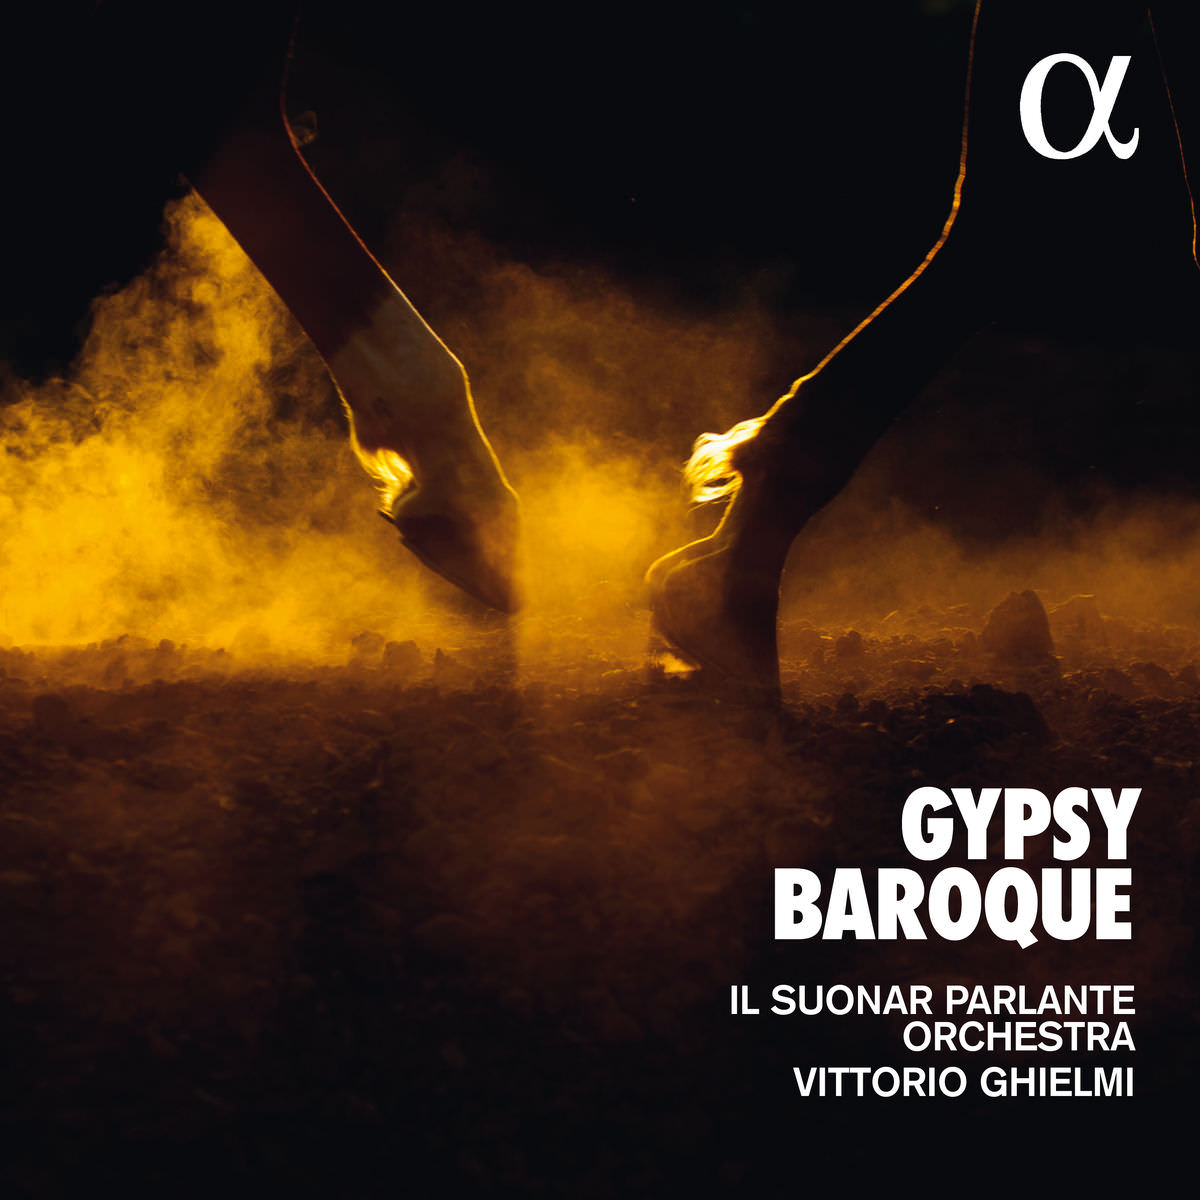 Il Suonar Parlante Orchestra & Vittorio Ghielmi – Gypsy Baroque (2018) [FLAC 24bit/44,1kHz]